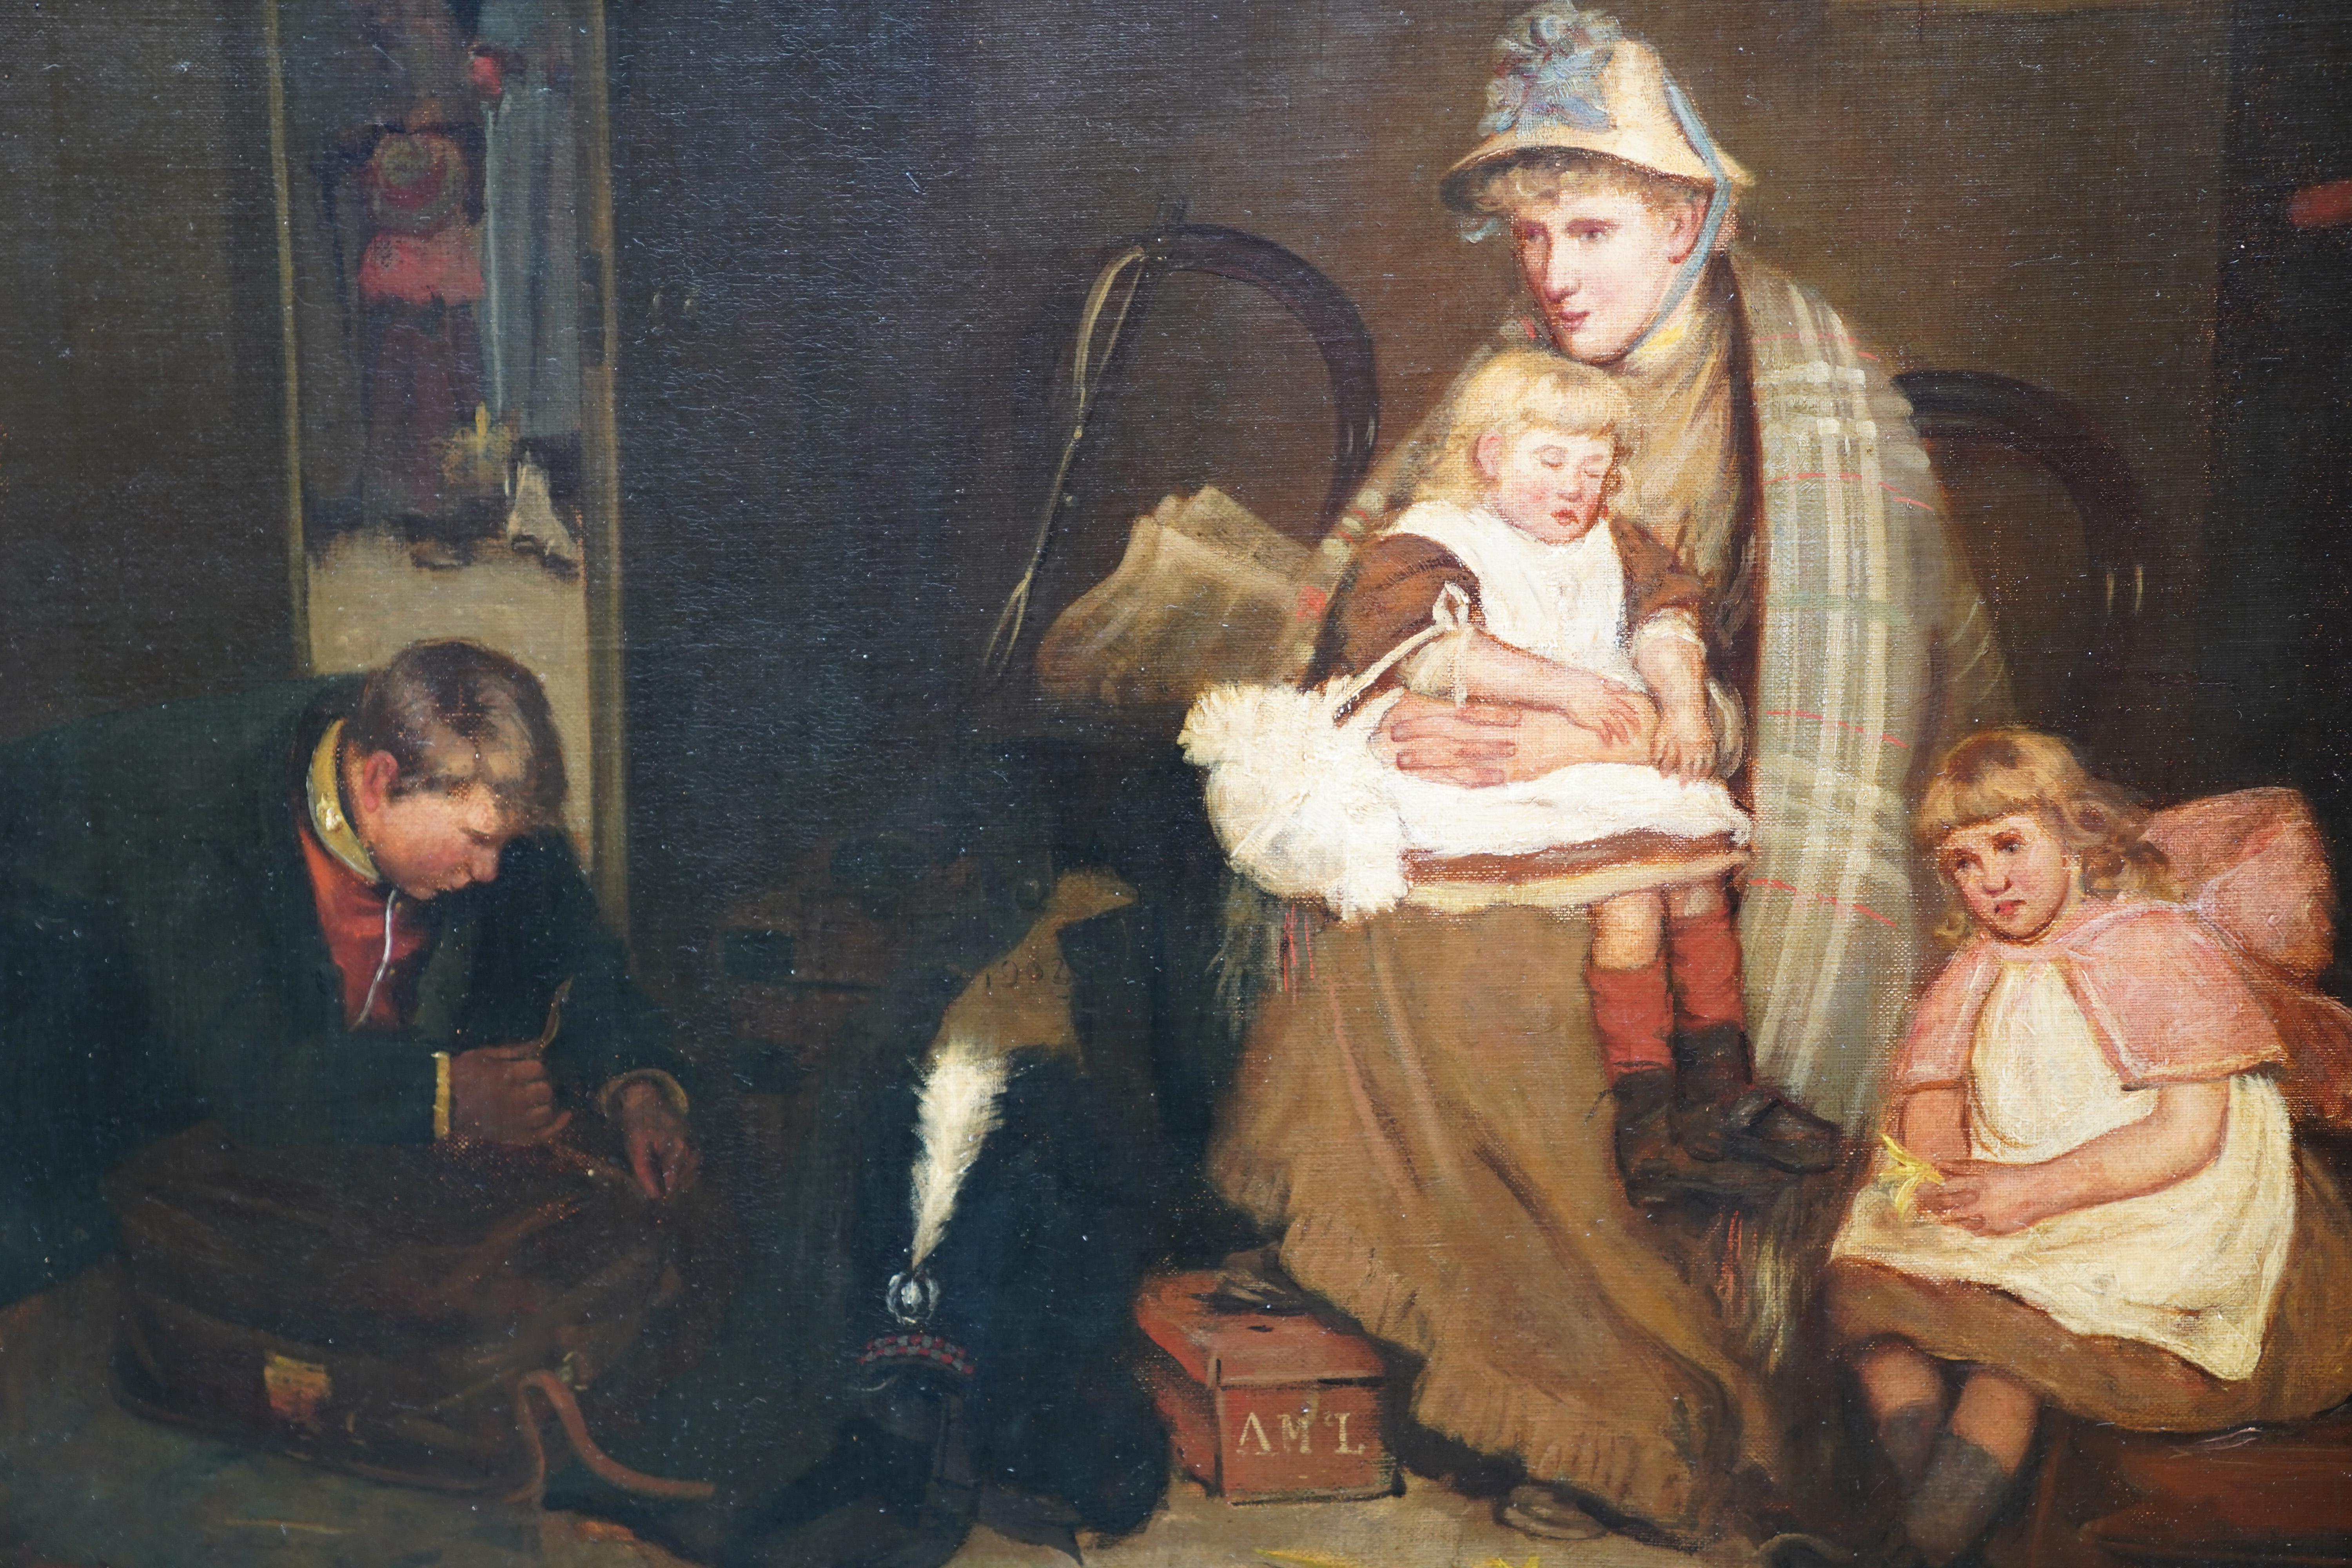 Cette ravissante peinture à l'huile de genre d'intérieur écossais est l'œuvre du célèbre artiste écossais Robert Gemmell Hutchison. Peint vers 1890, CIRCA a peint plusieurs versions de cette scène d'un jeune homme quittant sa famille pour devenir